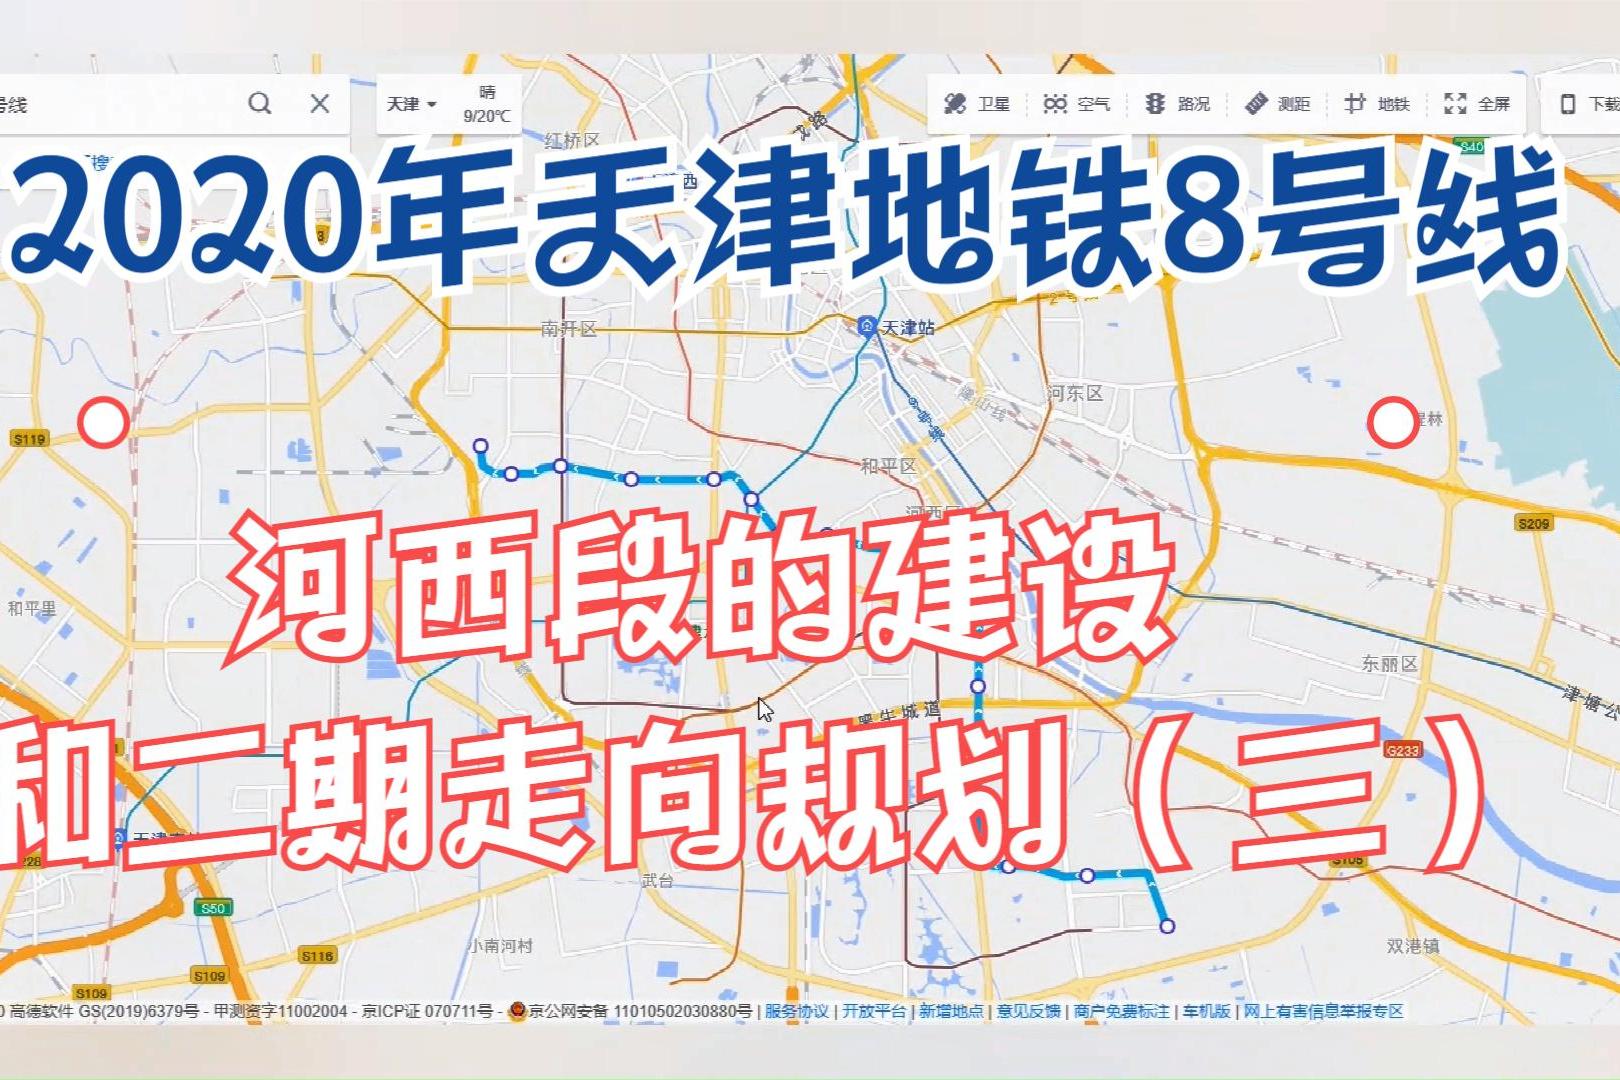 2020年天津地铁8号线河西段的建设和二期走向规划三